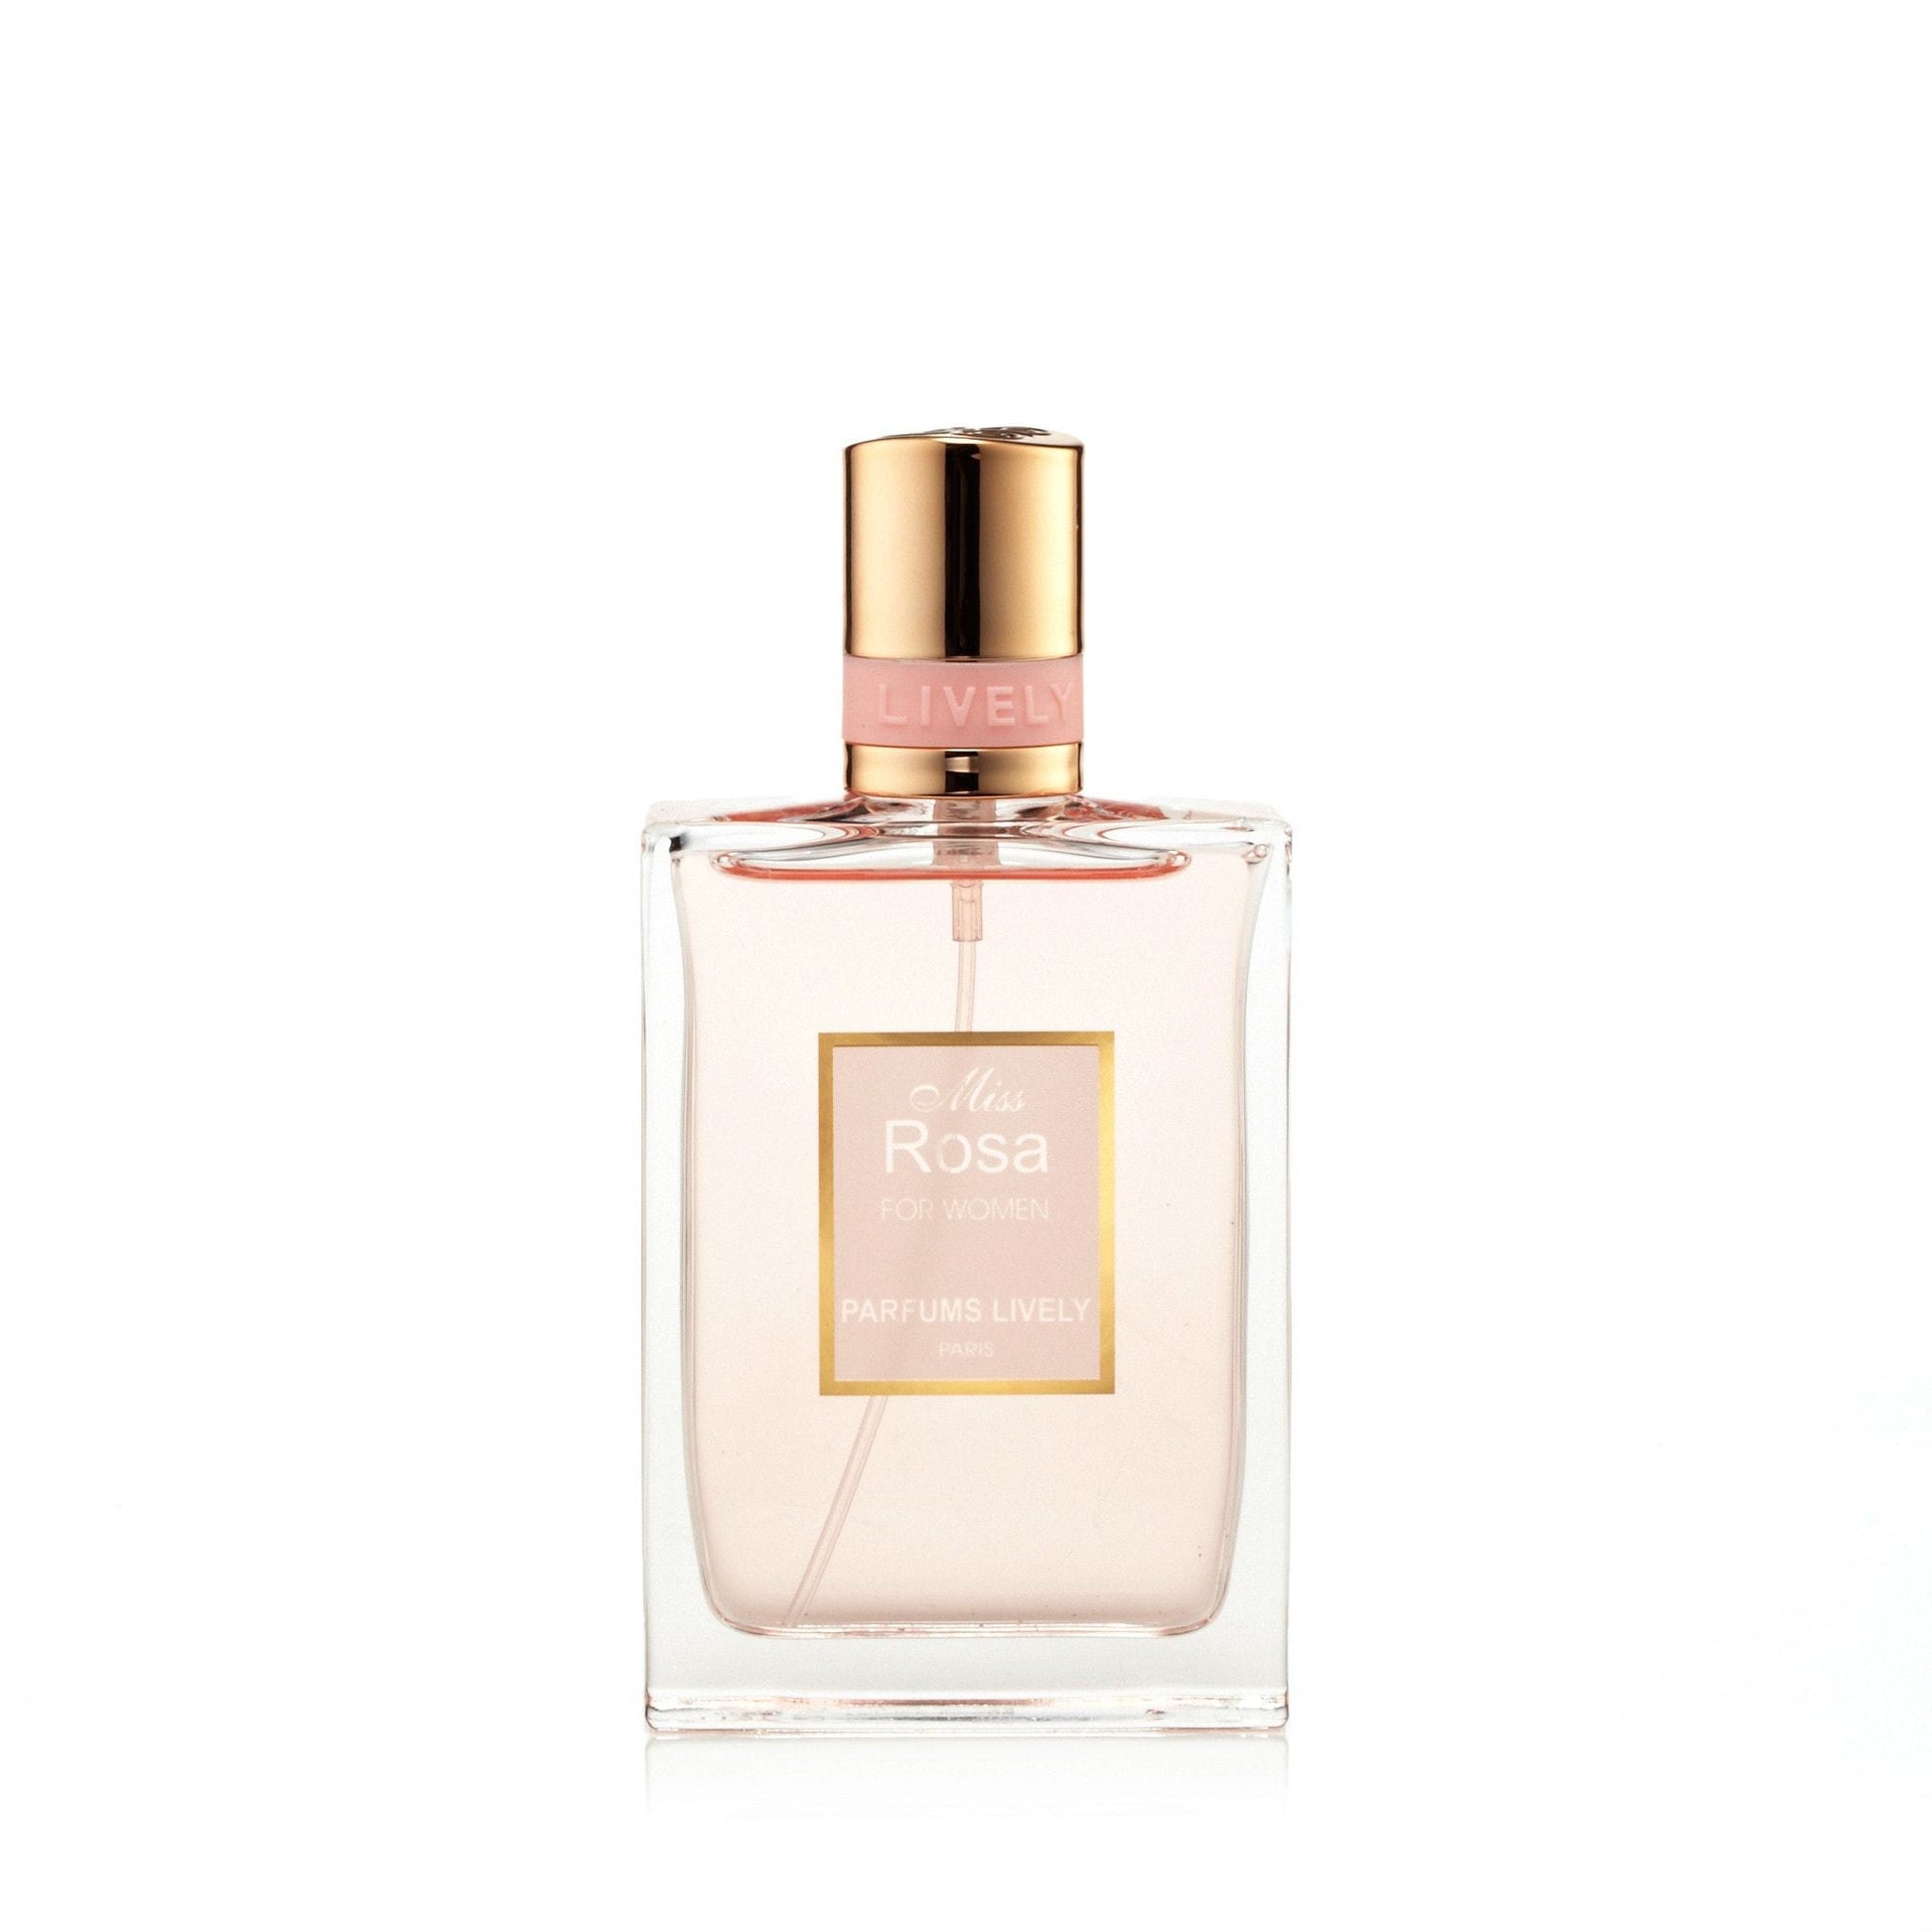 Lively Miss Rosa Eau de Parfum Spray for Women, Product image 1